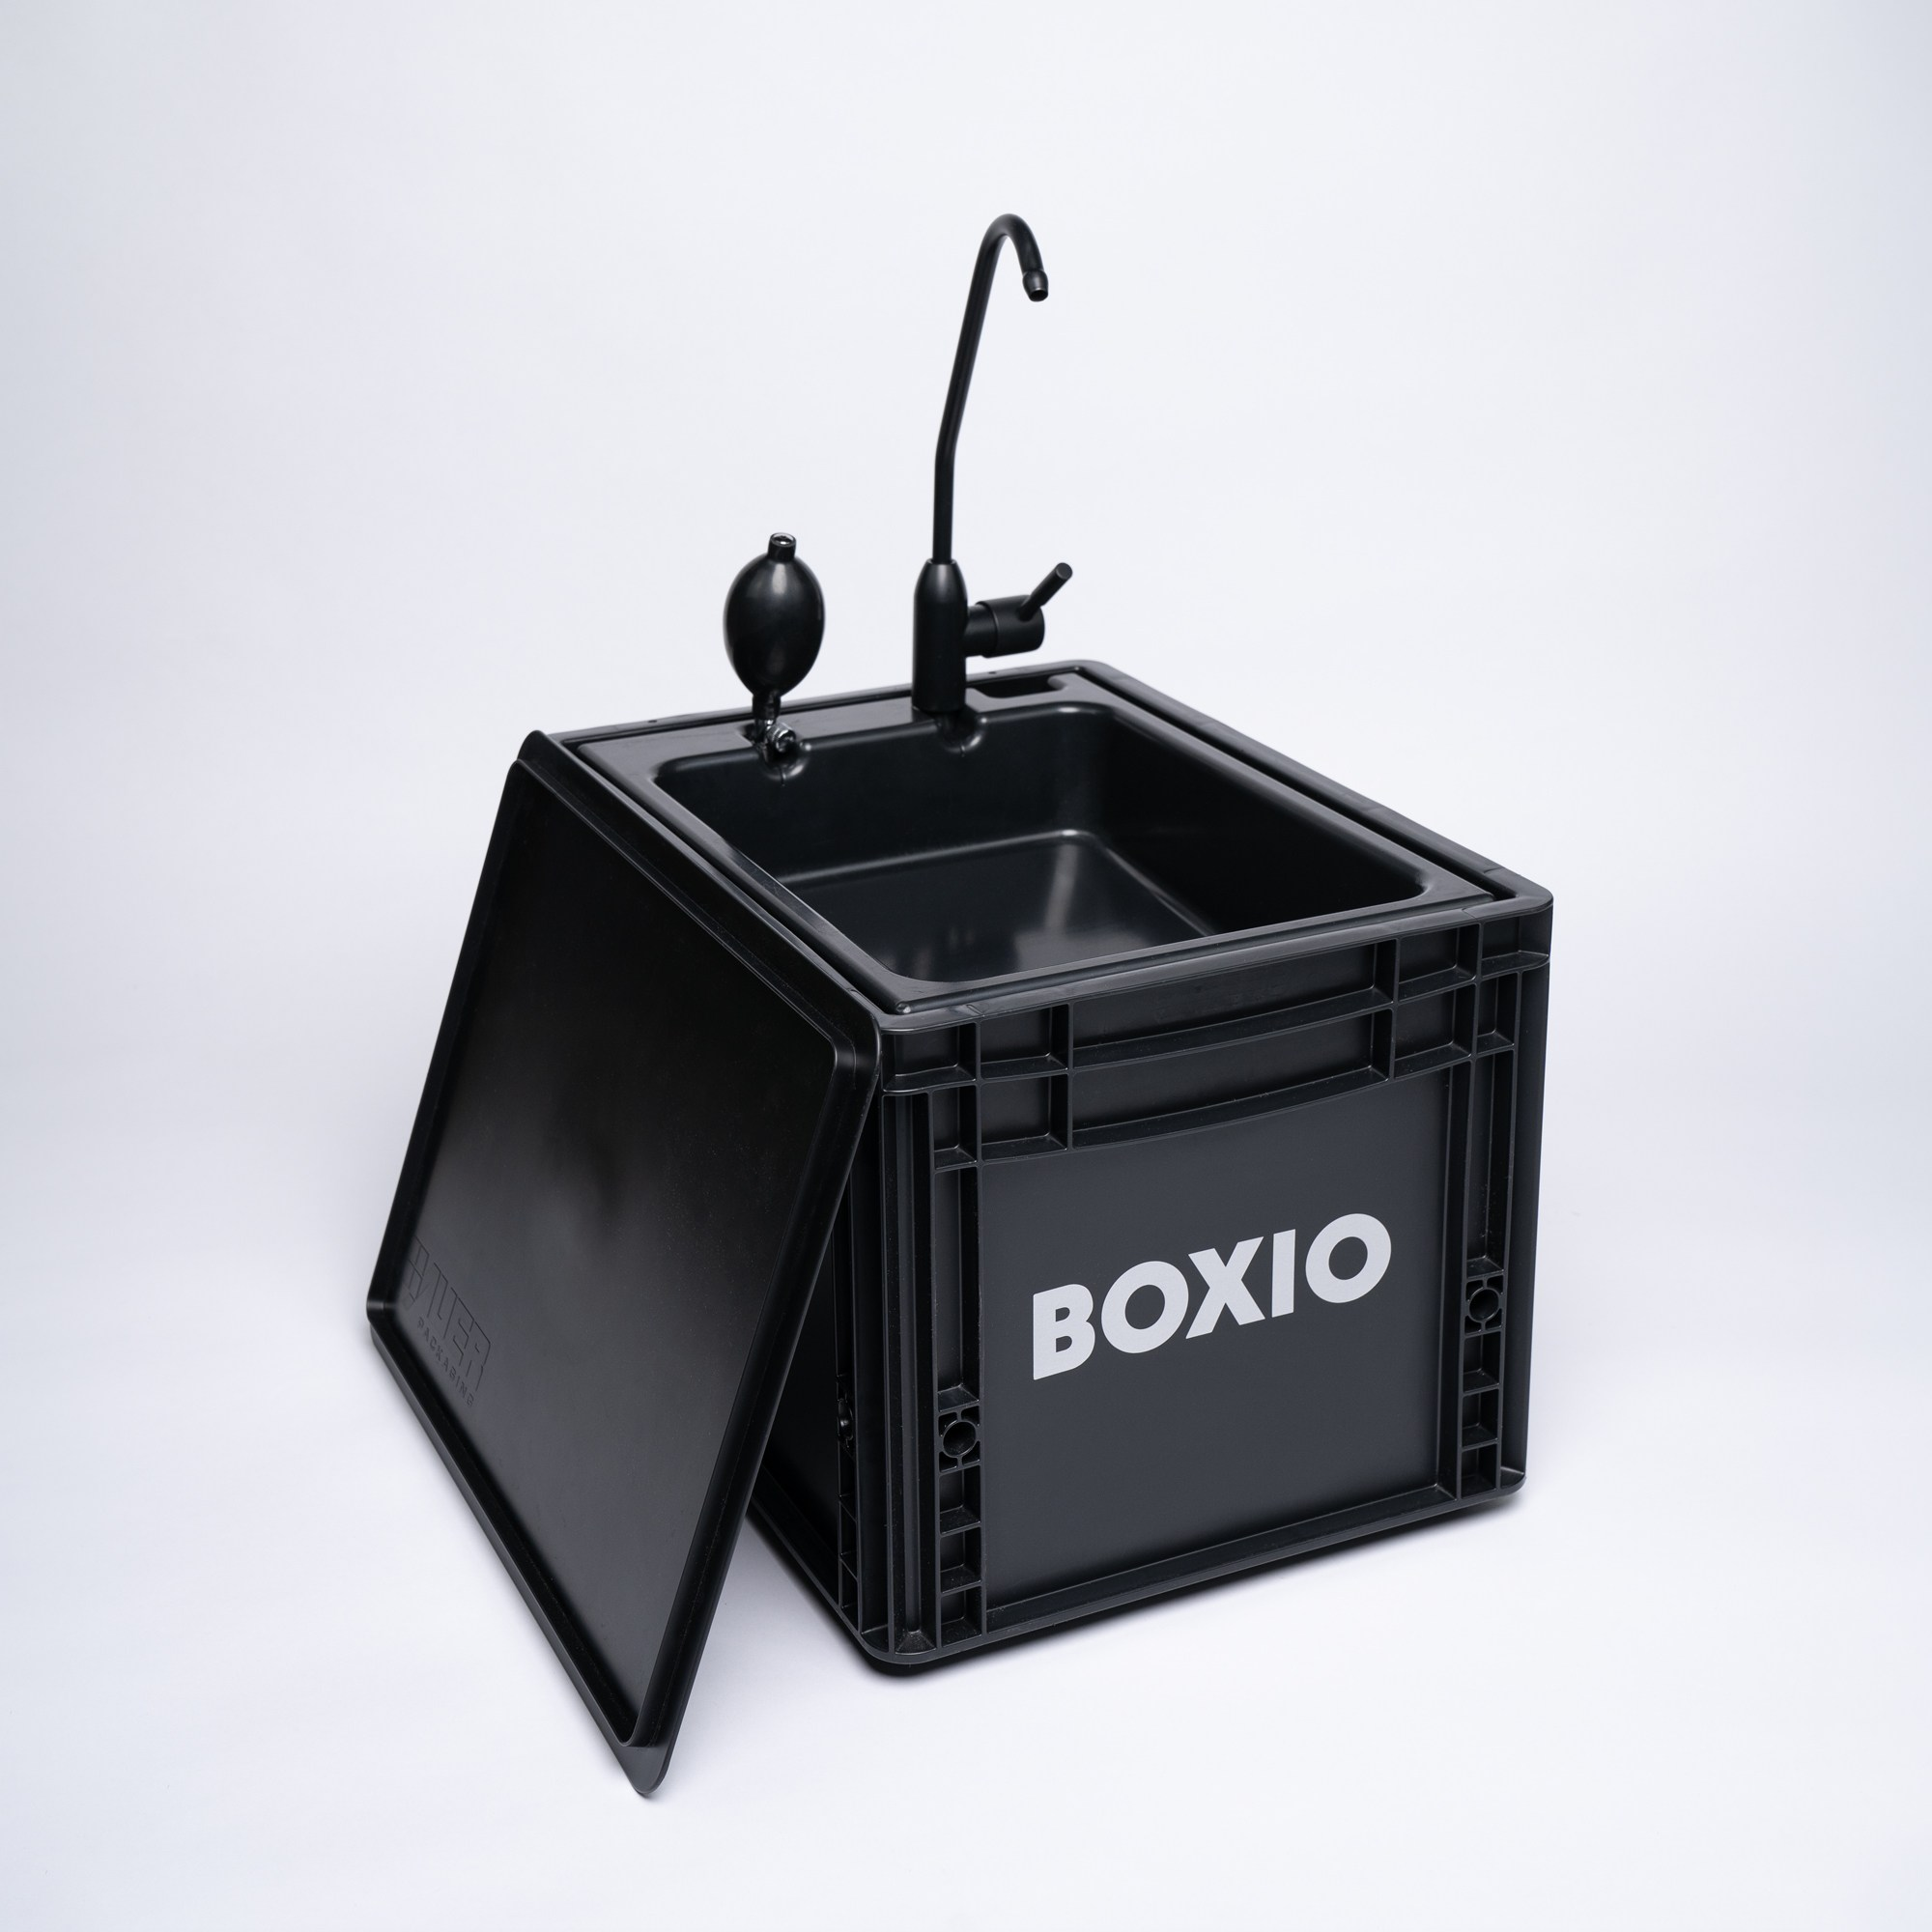 BOXIO-Wash set fra oven: sort Eurobox med nedfældet låg, pumpe og hane